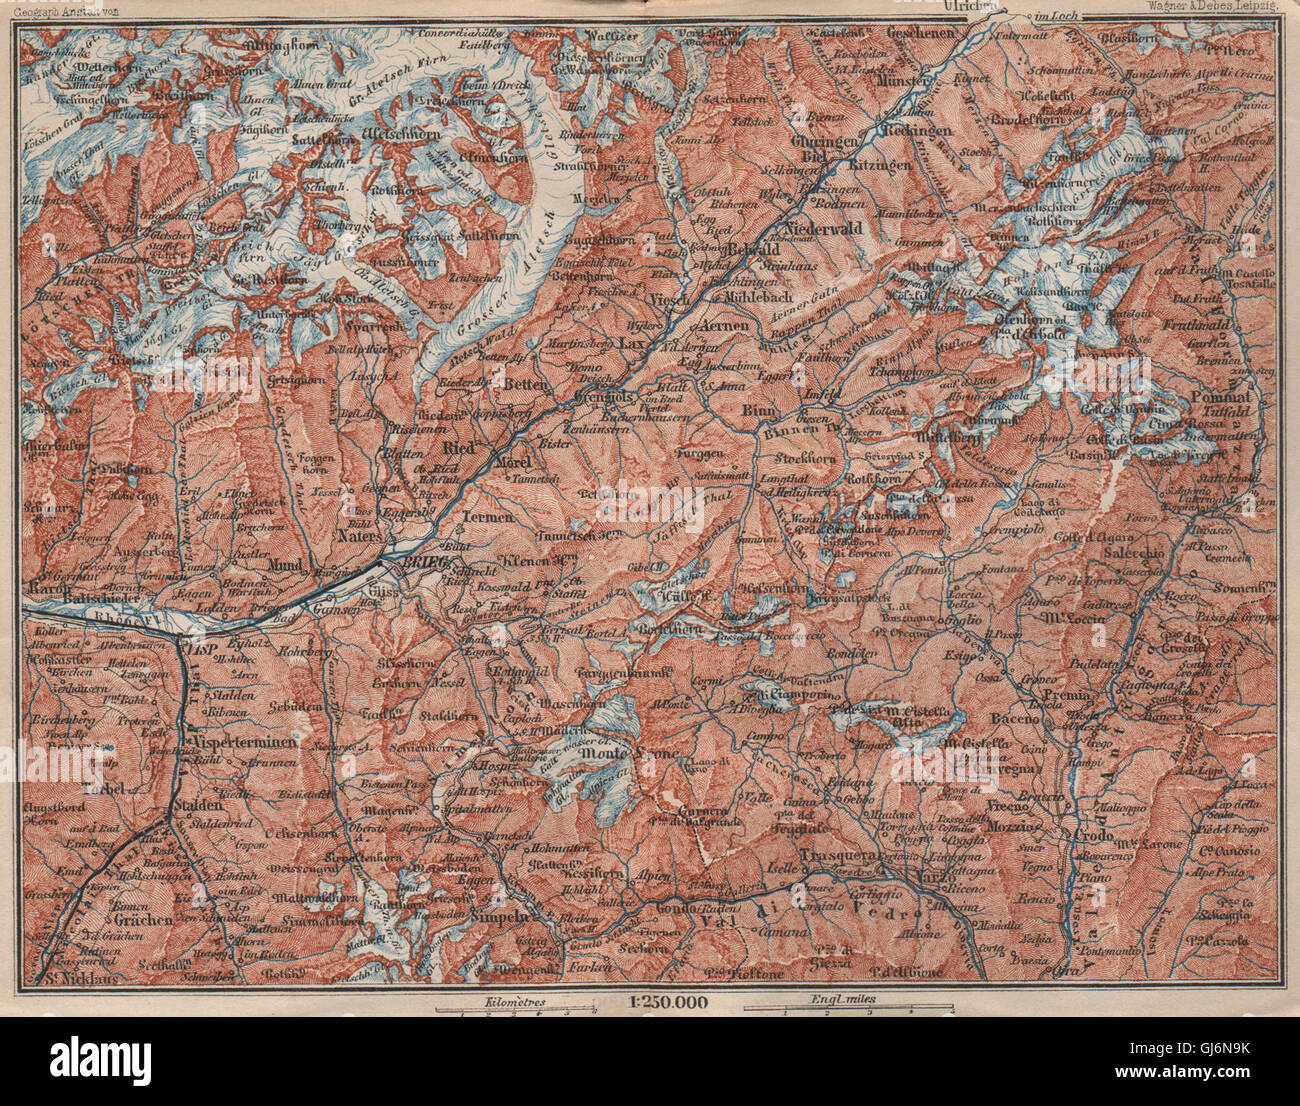 UPPER VALAIS. Grächen Aletschhorn Ofenhorn Brieg Niederwald Ried Rhone, 1897 map Stock Photo